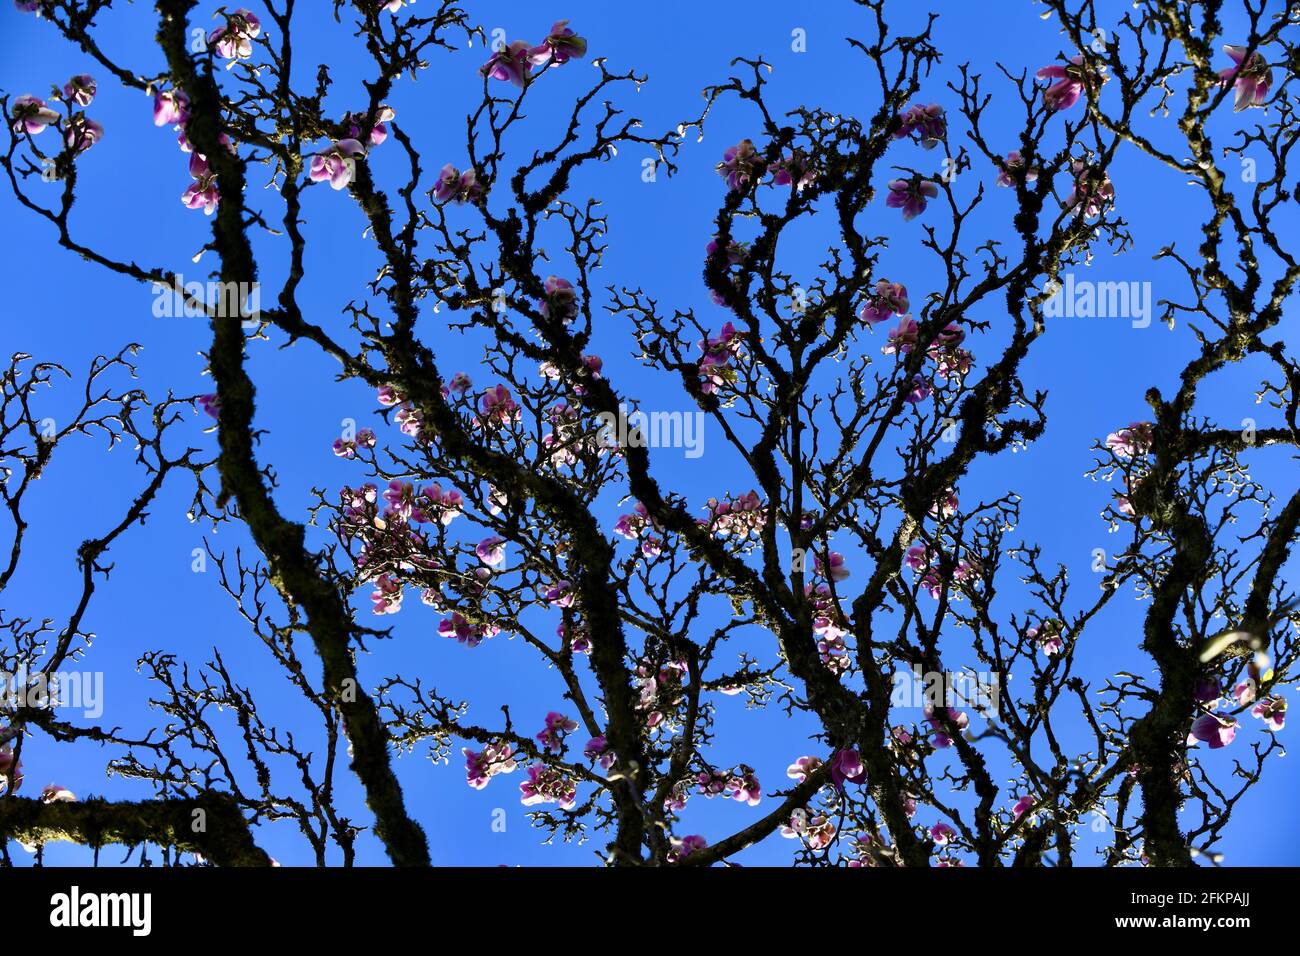 Herrlich blühender Magnolienbaum im Frühling gegen den strahlend blauen Himmel Stock Photo